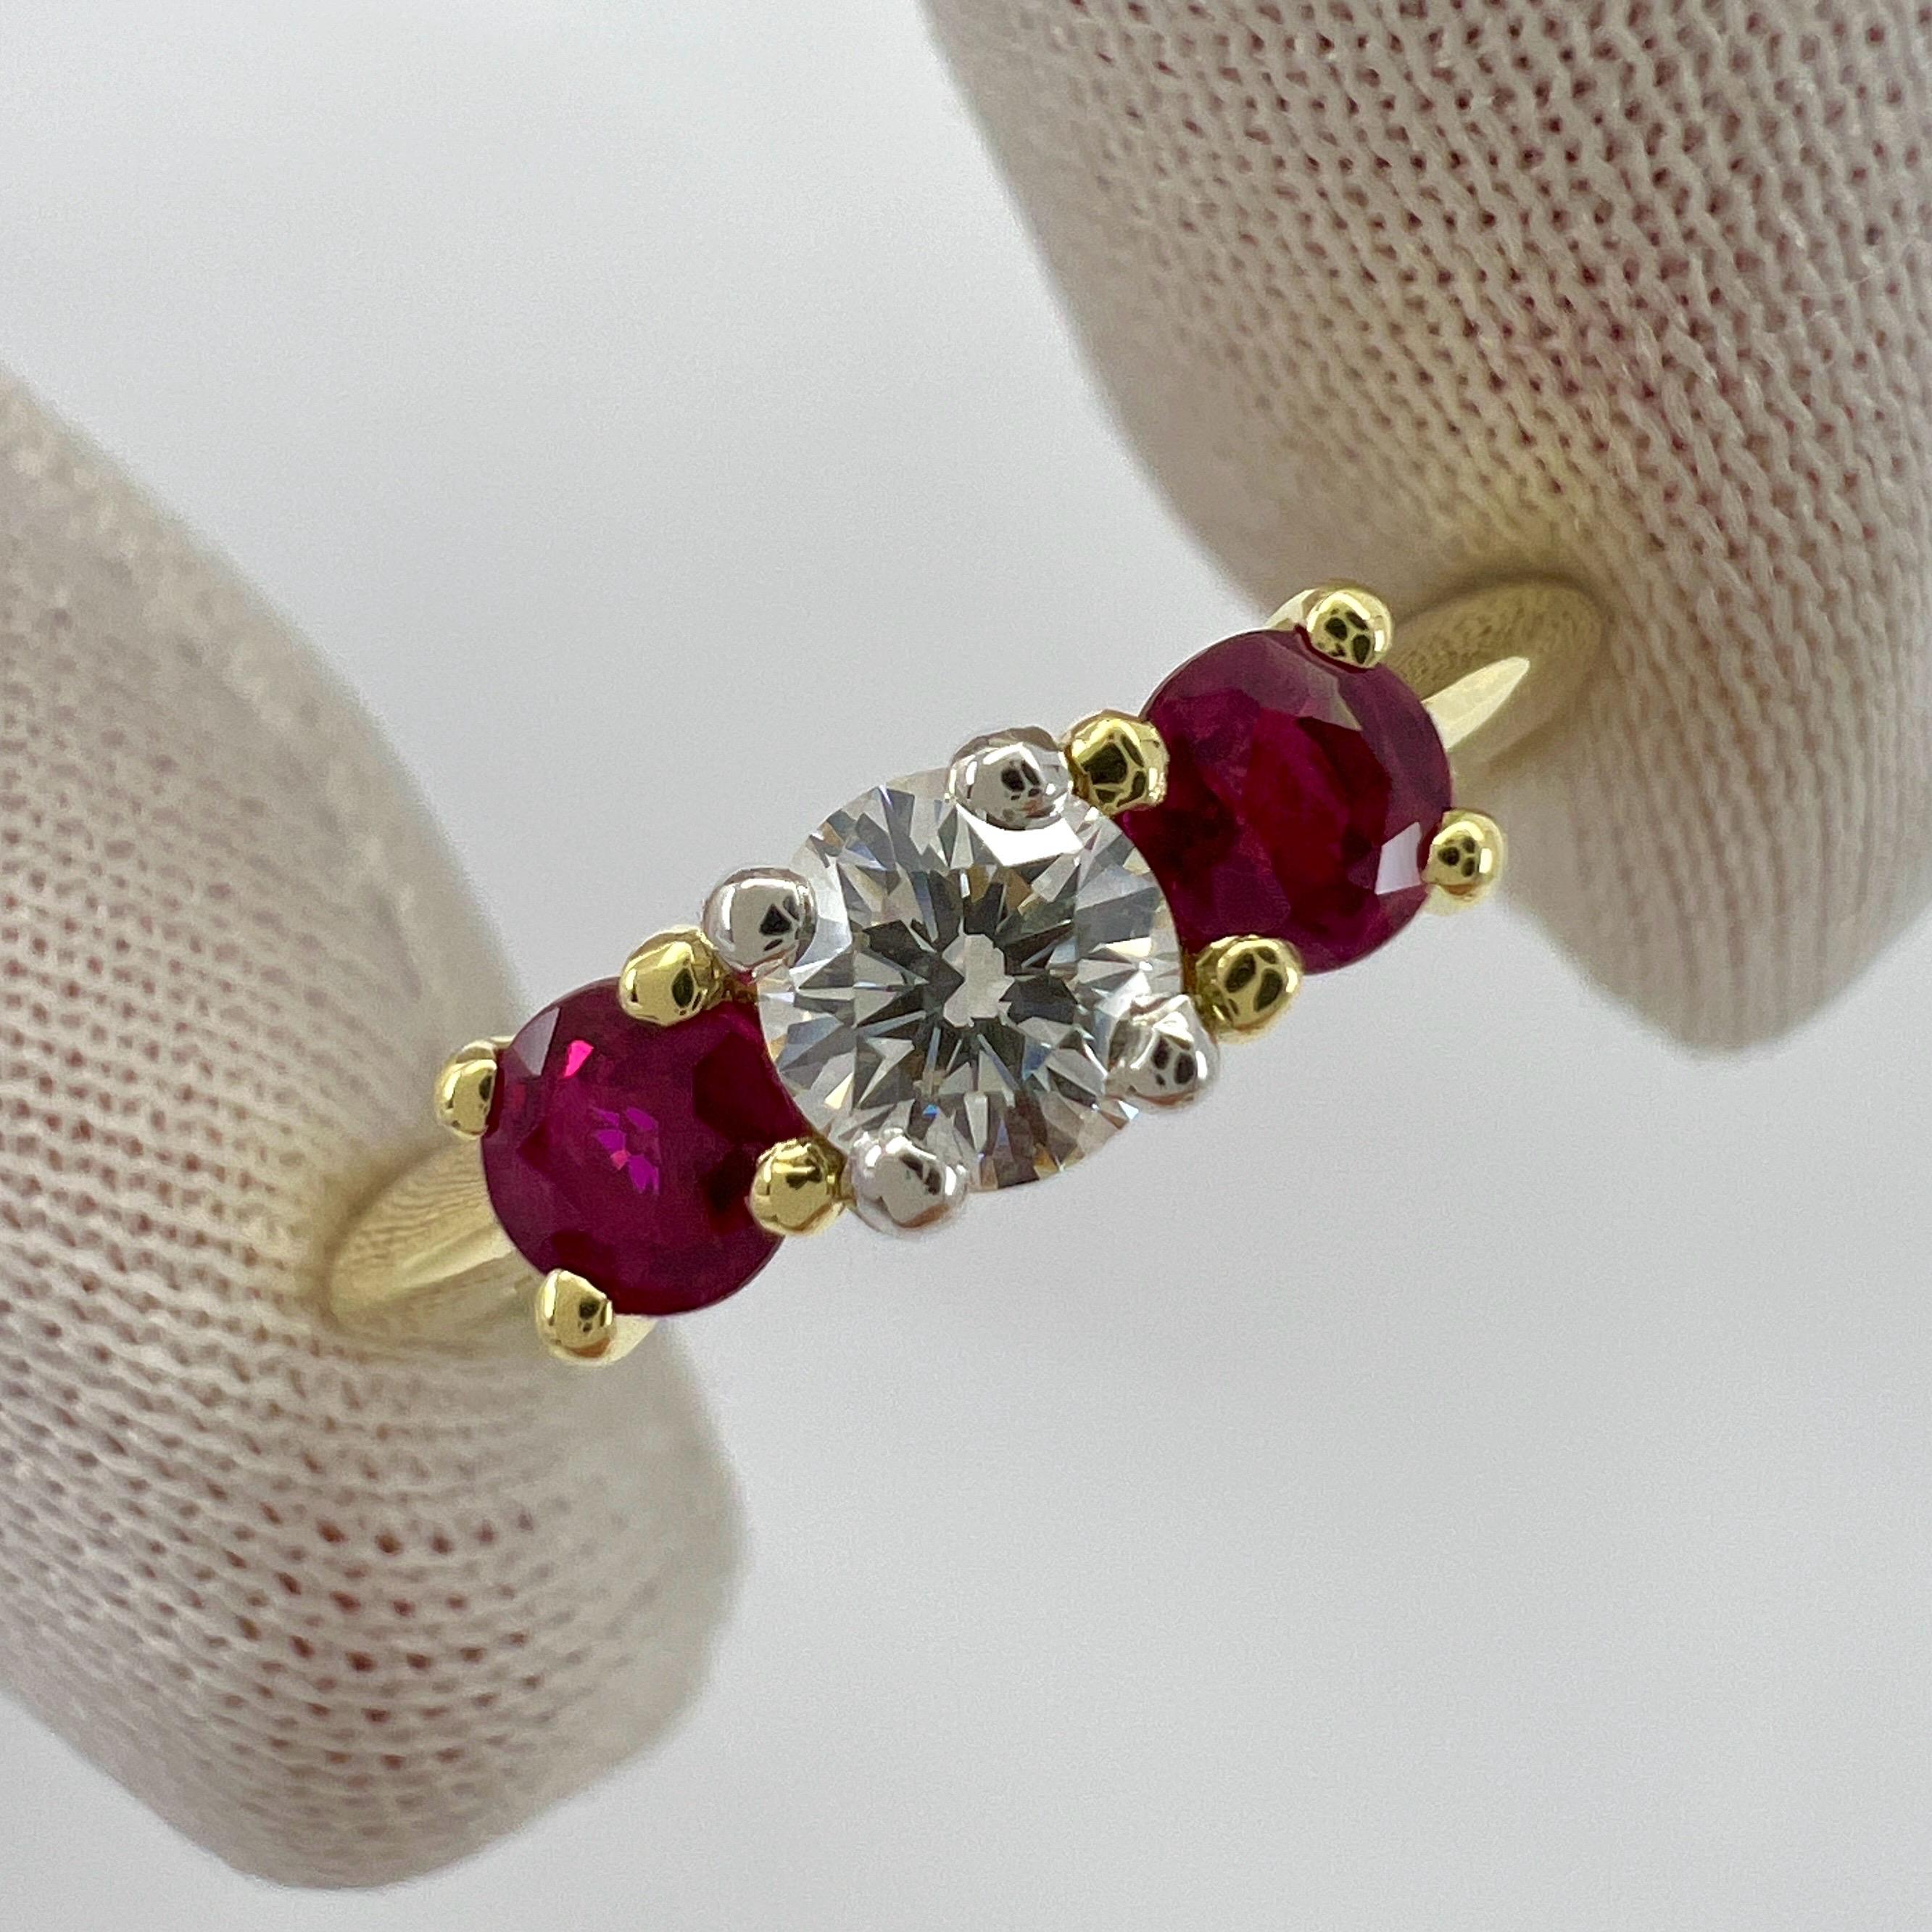 Vintage Tiffany & Co Round Cut Diamond & Ruby 18k Gelbgold & Platin Drei Stein Ring.

Edle Juweliere wie Tiffany verwenden nur die feinsten Diamanten und Edelsteine für ihre Schmuckstücke, und dieses Stück ist keine Ausnahme. Ein 4 mm großer Diamant